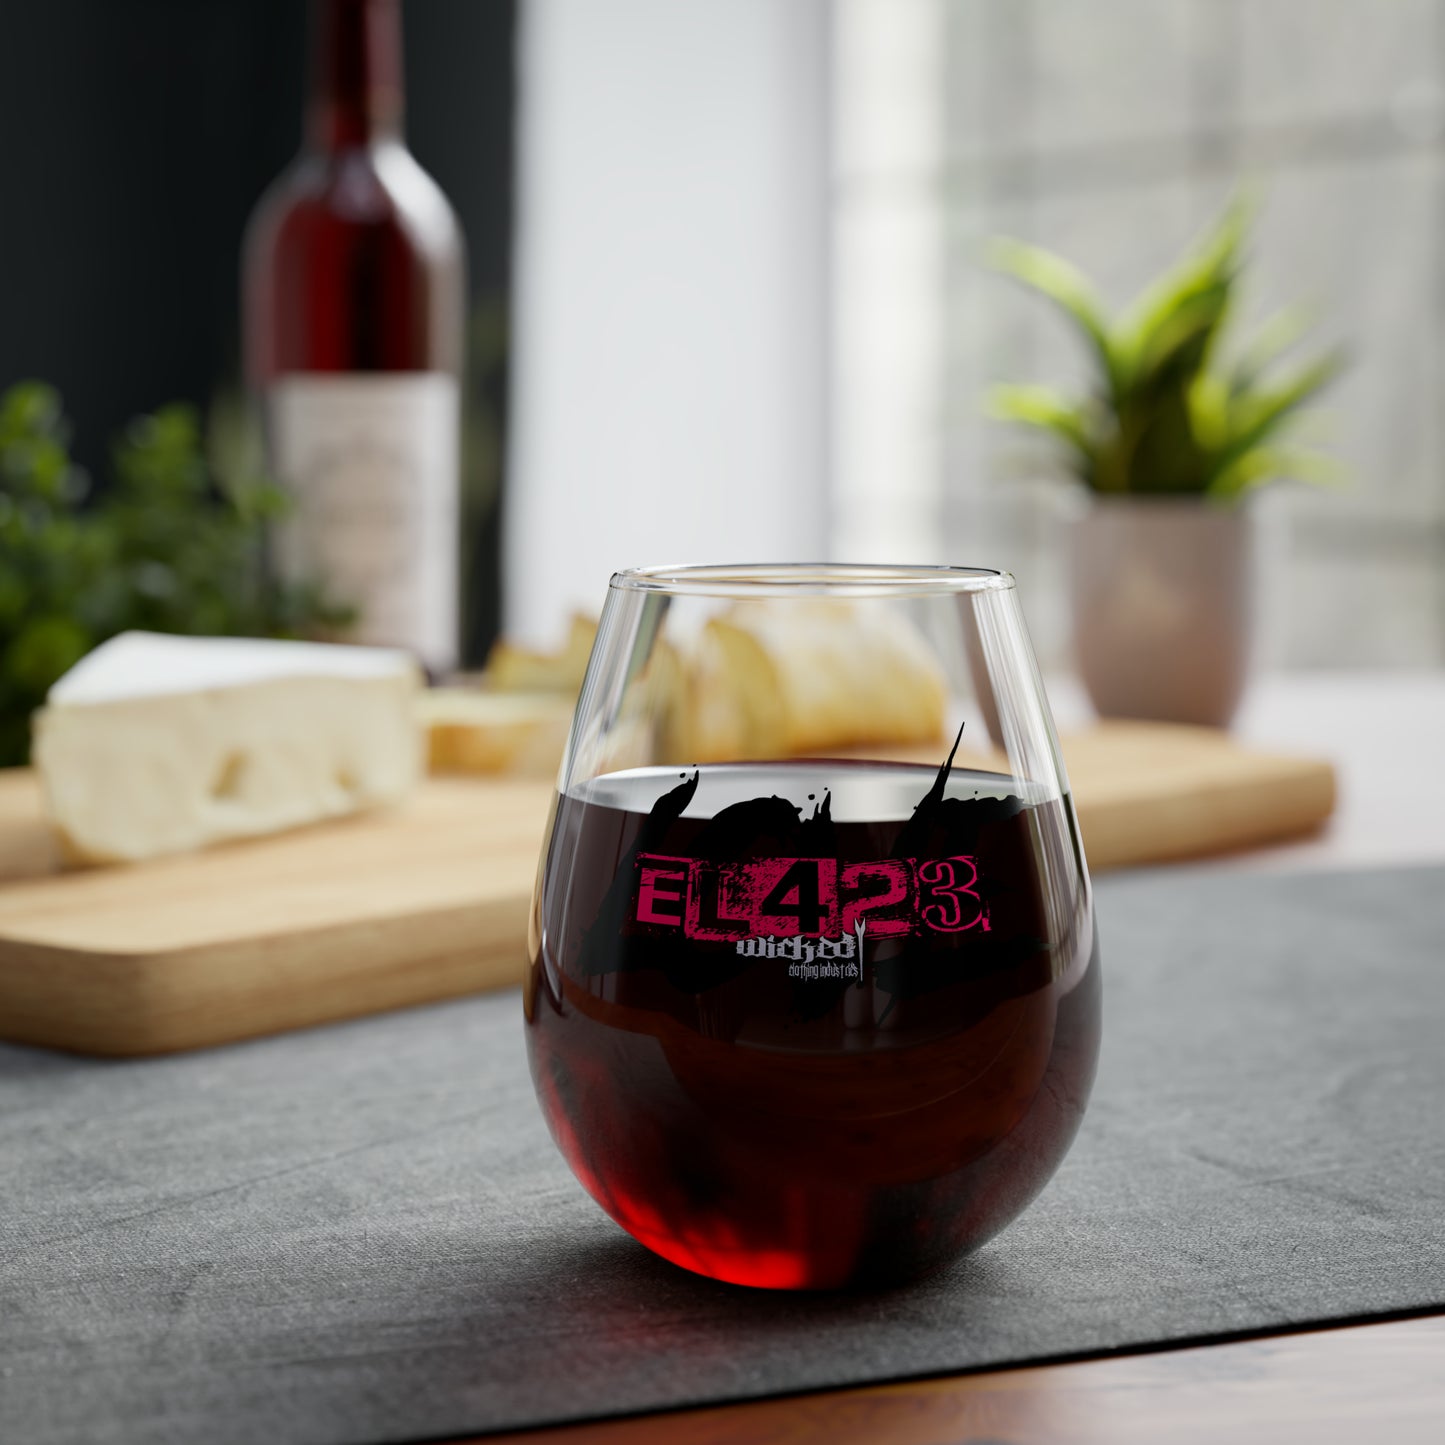 EL423 Gypsy Love Stemless Wine Glass, 11.75oz